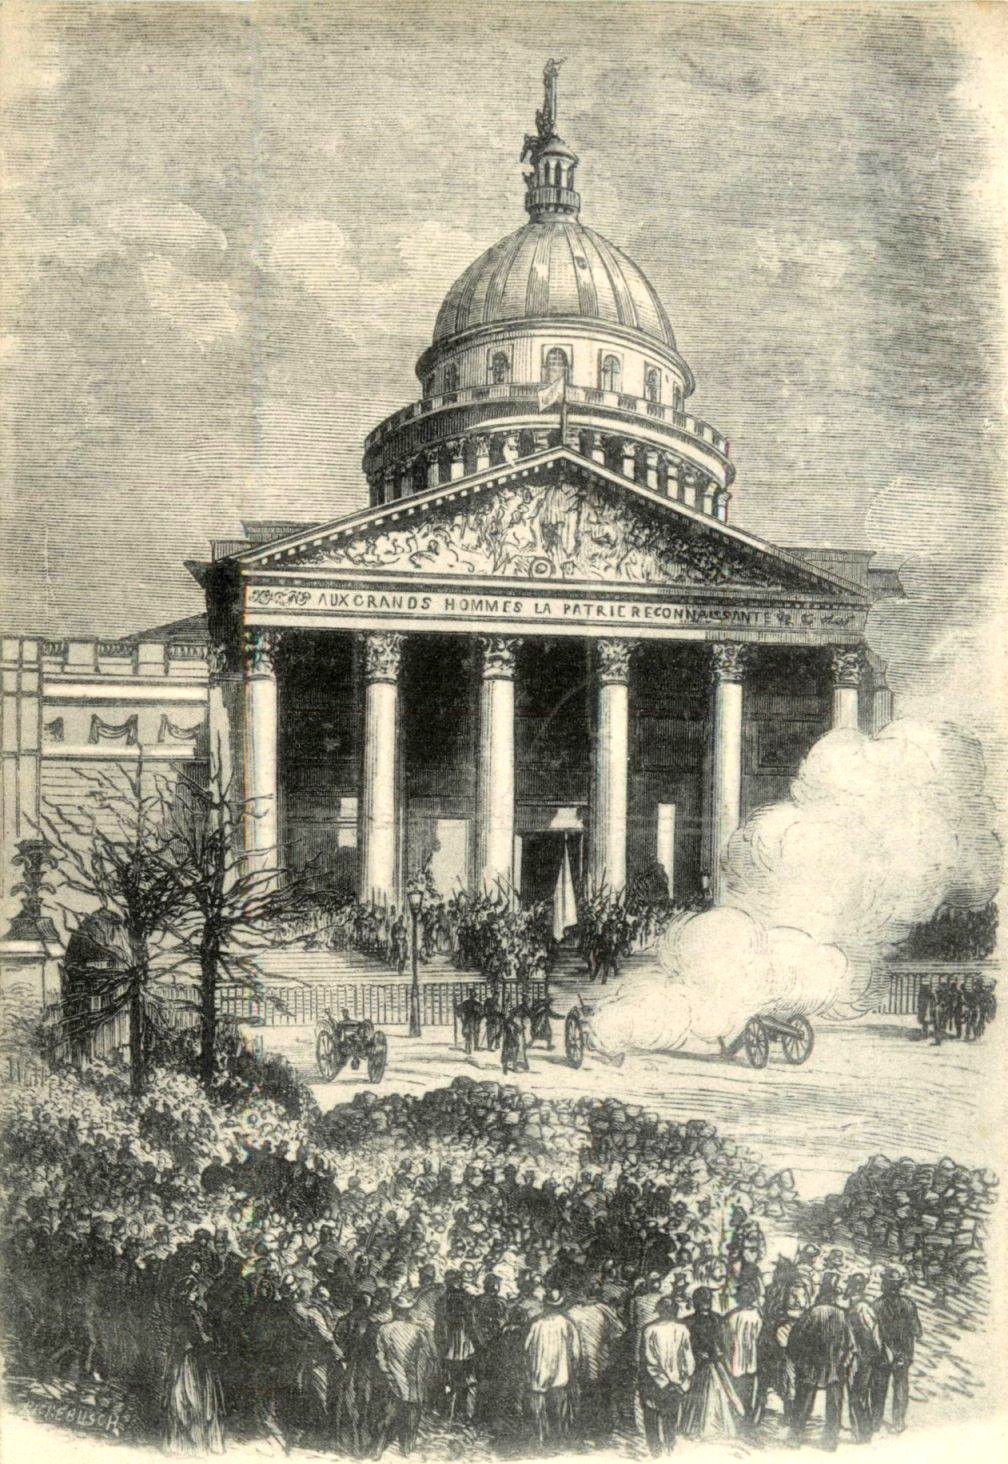 Carte postale Paris sous la Commune 1871 n° 110 - Le drapeau rouge placé sur le Panthéon, 31 mars 1871. AJH